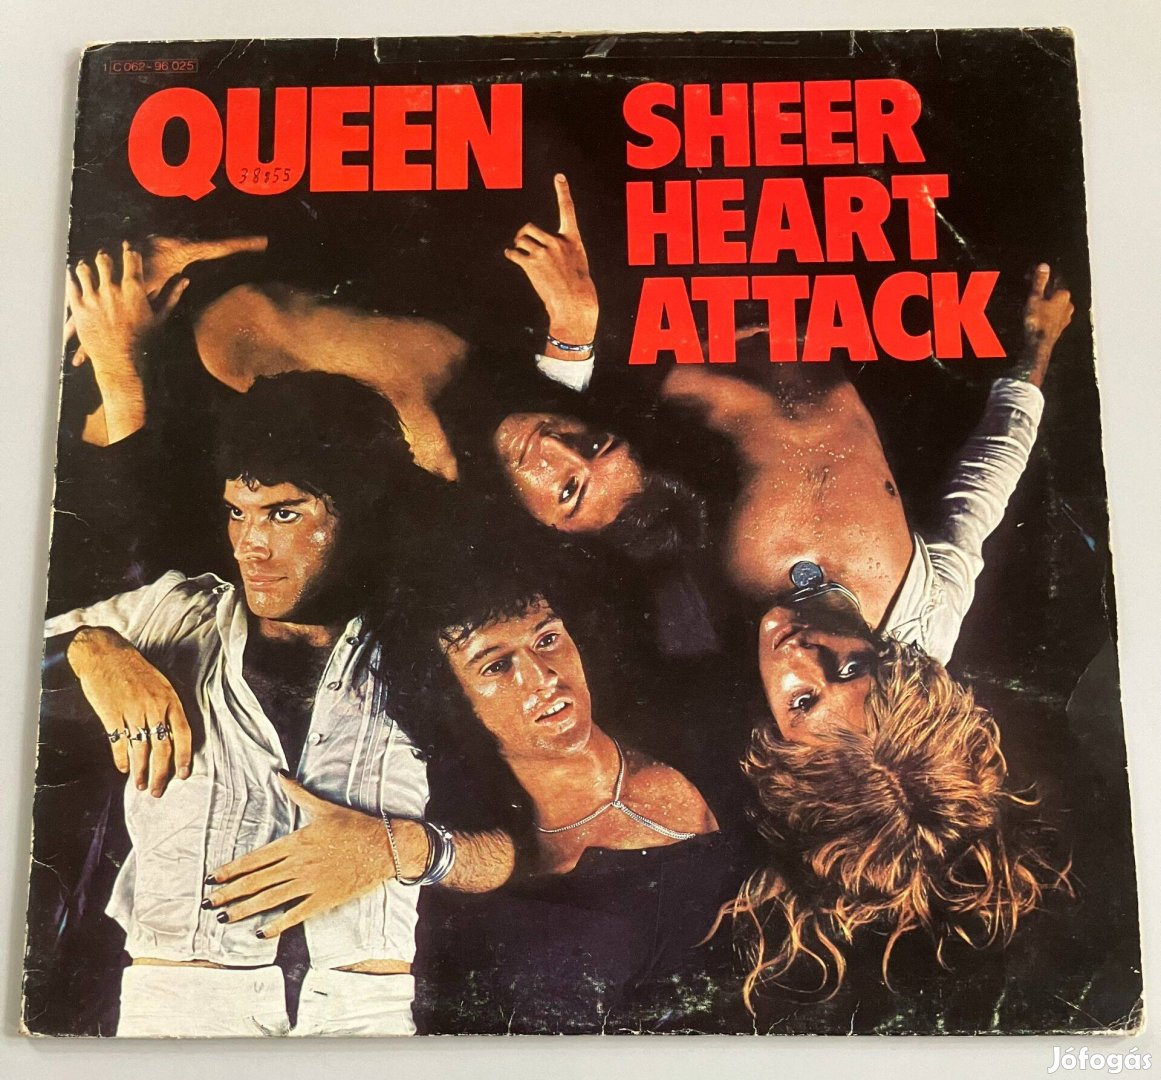 Queen - Sheer Heart Attack (német, 1C 062 96-025)